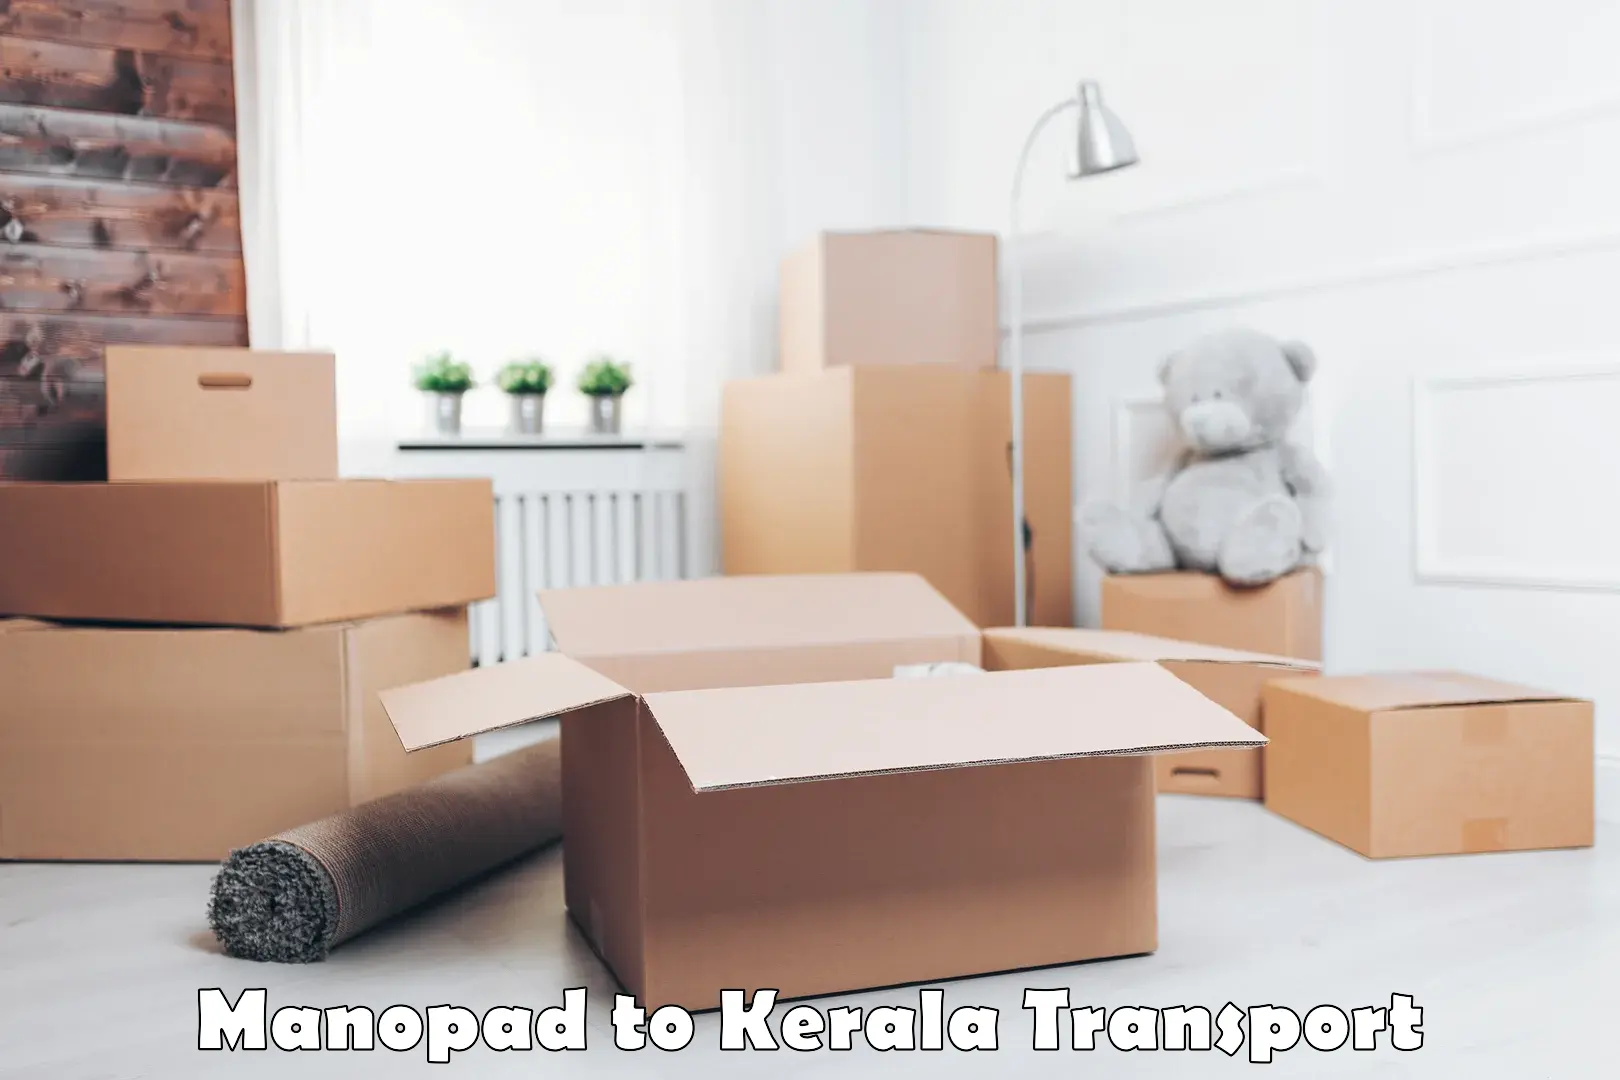 Transportation solution services Manopad to Kottarakkara